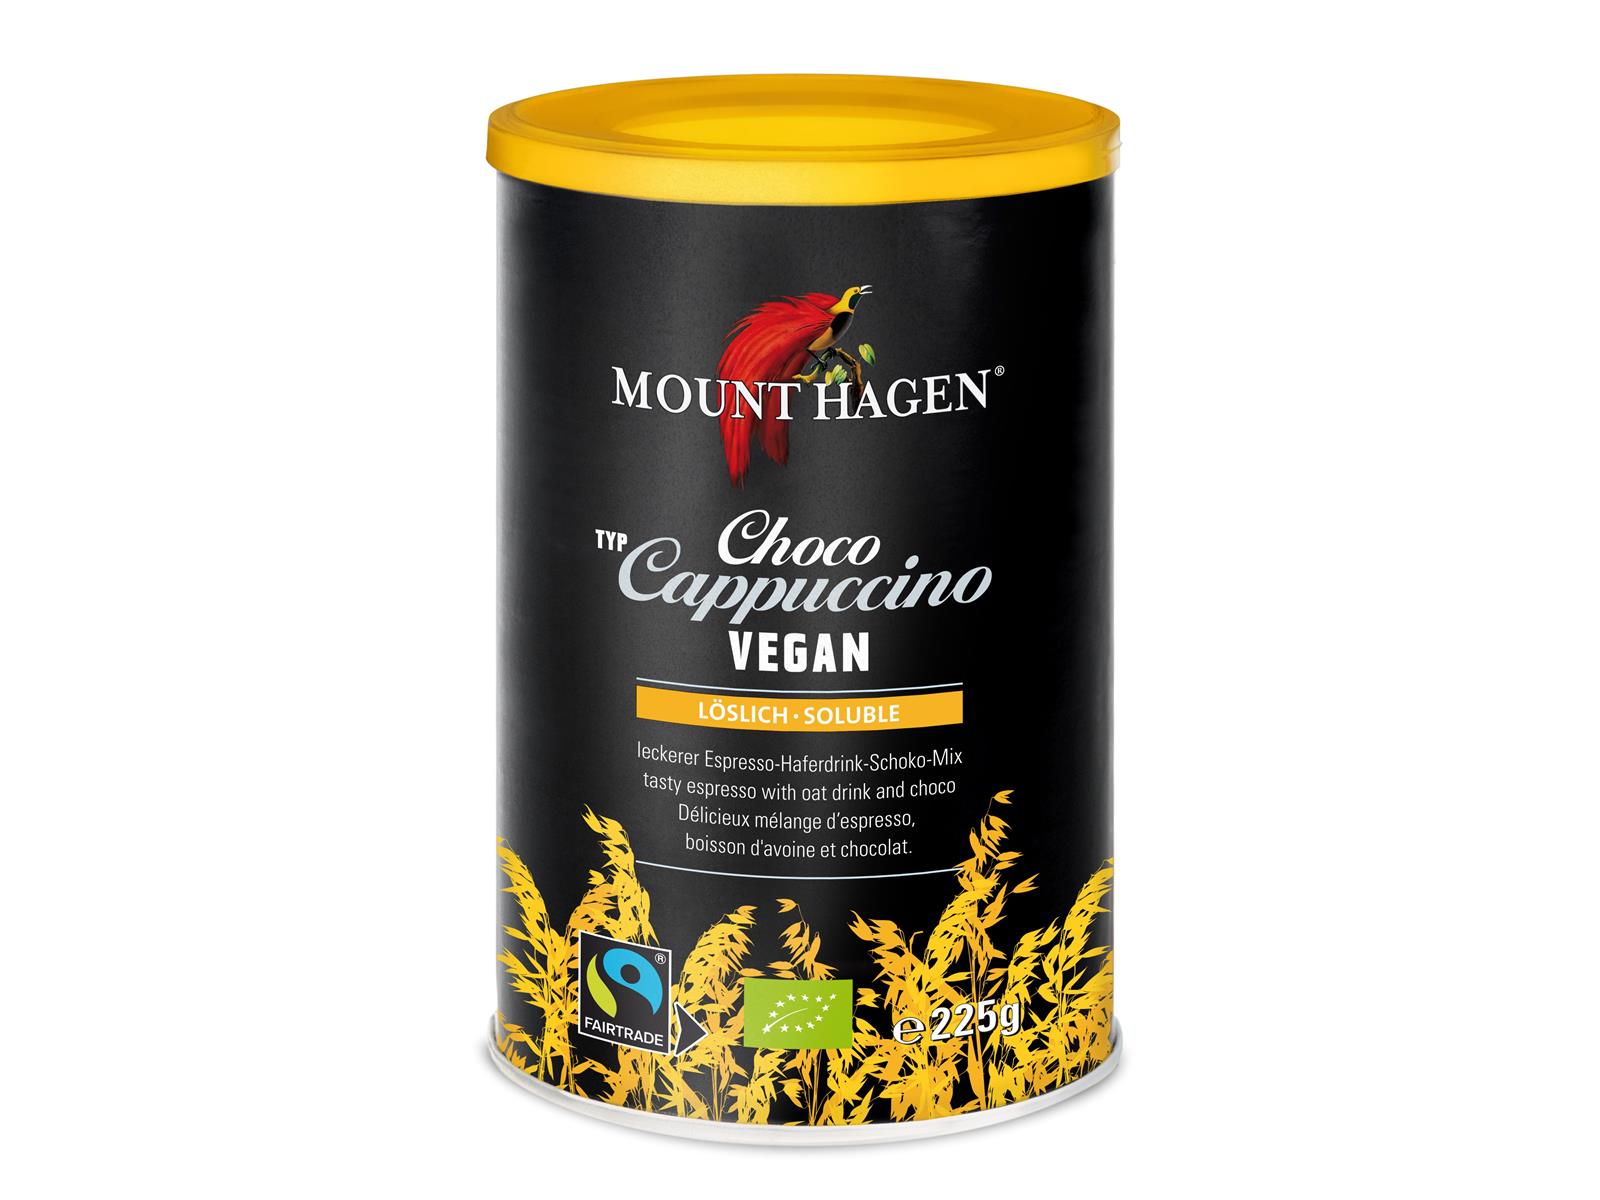 Mount Hagen Cappuccino Choco Vegan 225 g